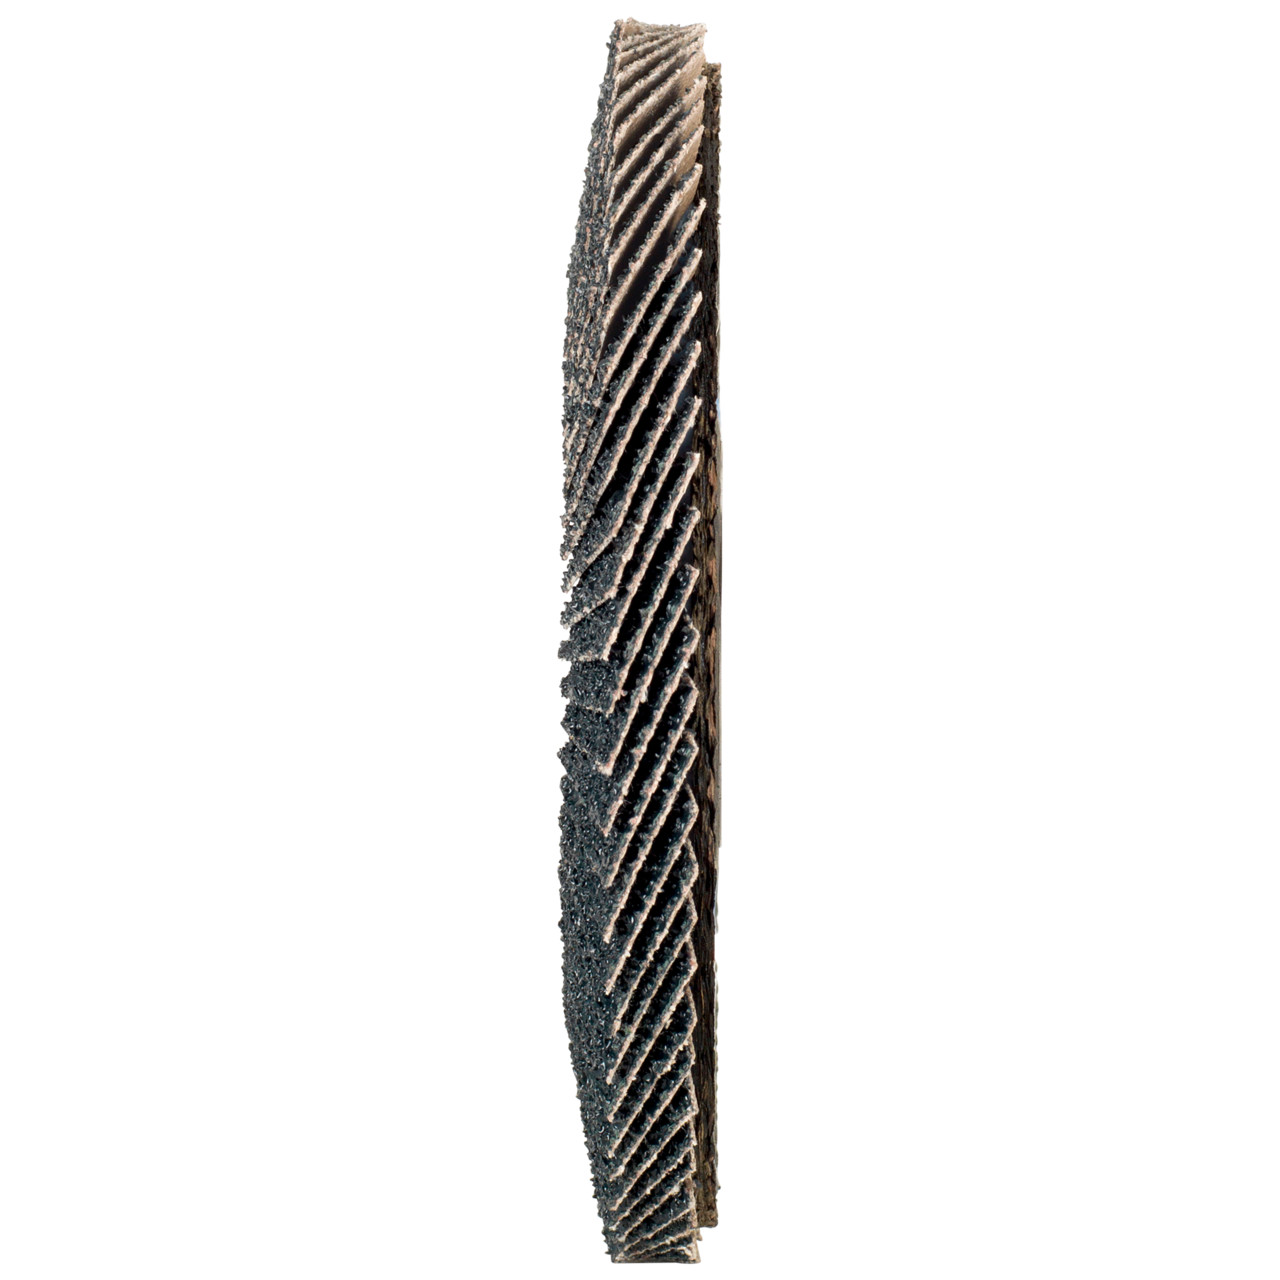 Tyrolit Gekartelde borgring DxH 115x22,2 2in1 voor staal &amp; roestvrij staal, P80, vorm: 27A - offset versie (glasvezeldrager huisversie), Art. 668649